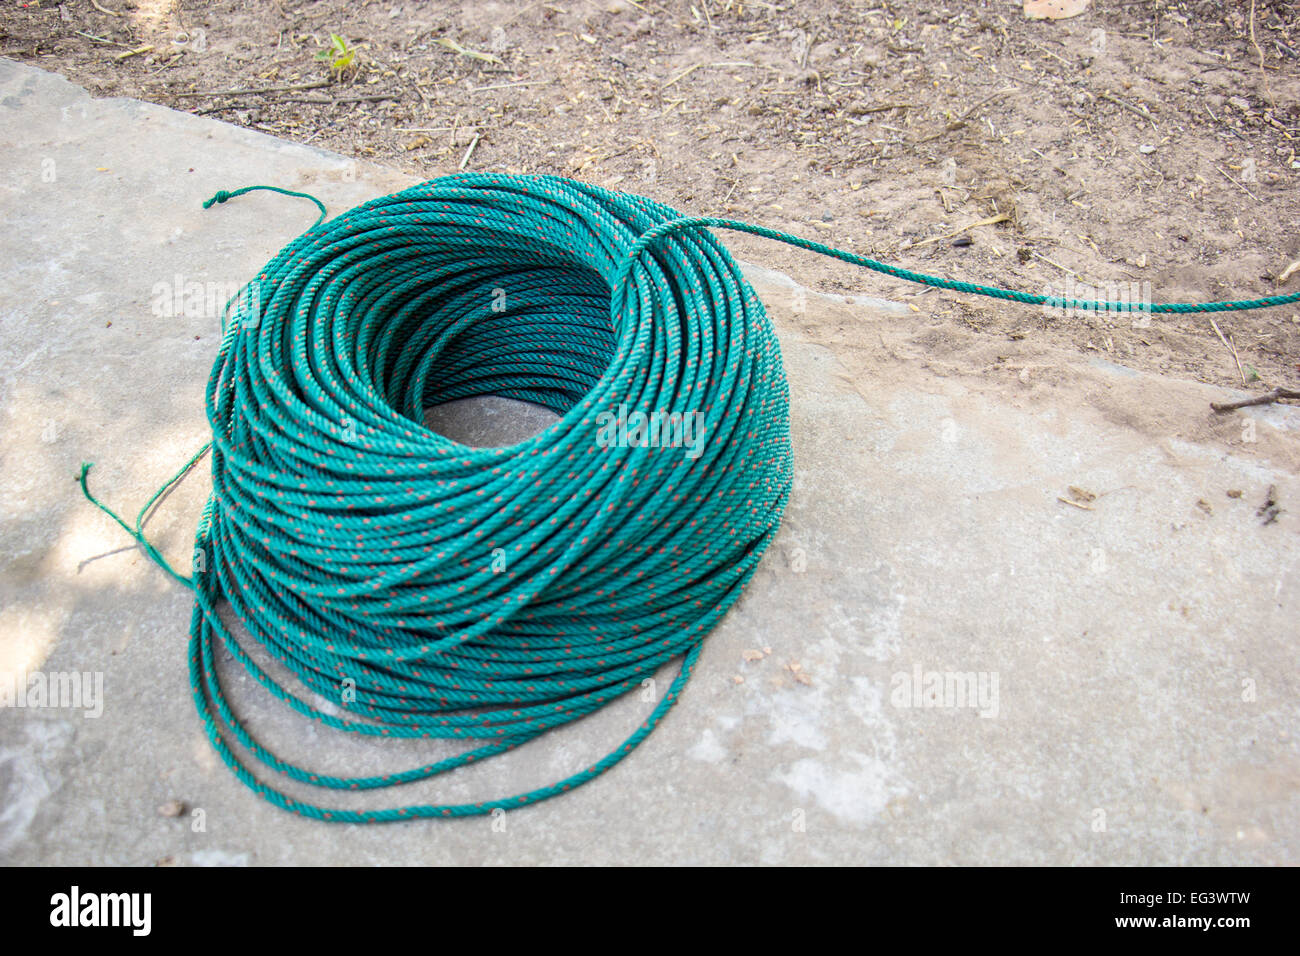 https://c8.alamy.com/comp/EG3WTW/the-green-nylon-rope-reel-line-green-line-rope-nylon-EG3WTW.jpg